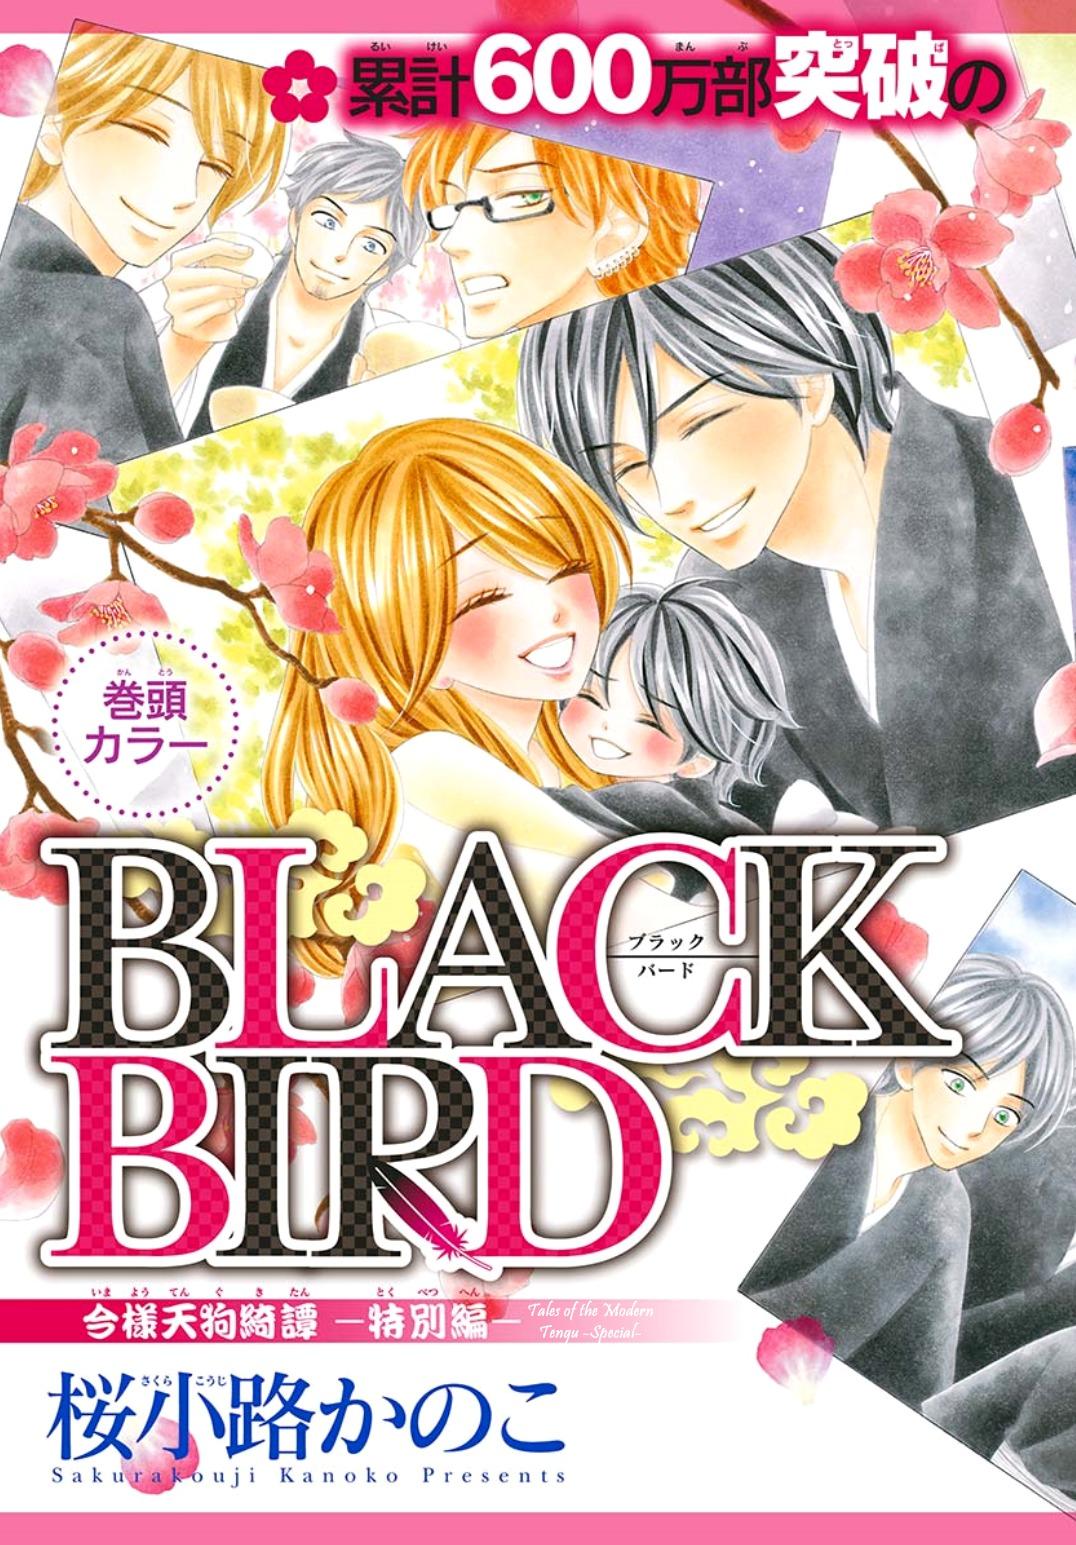 Black Bird - episode 89 - 2